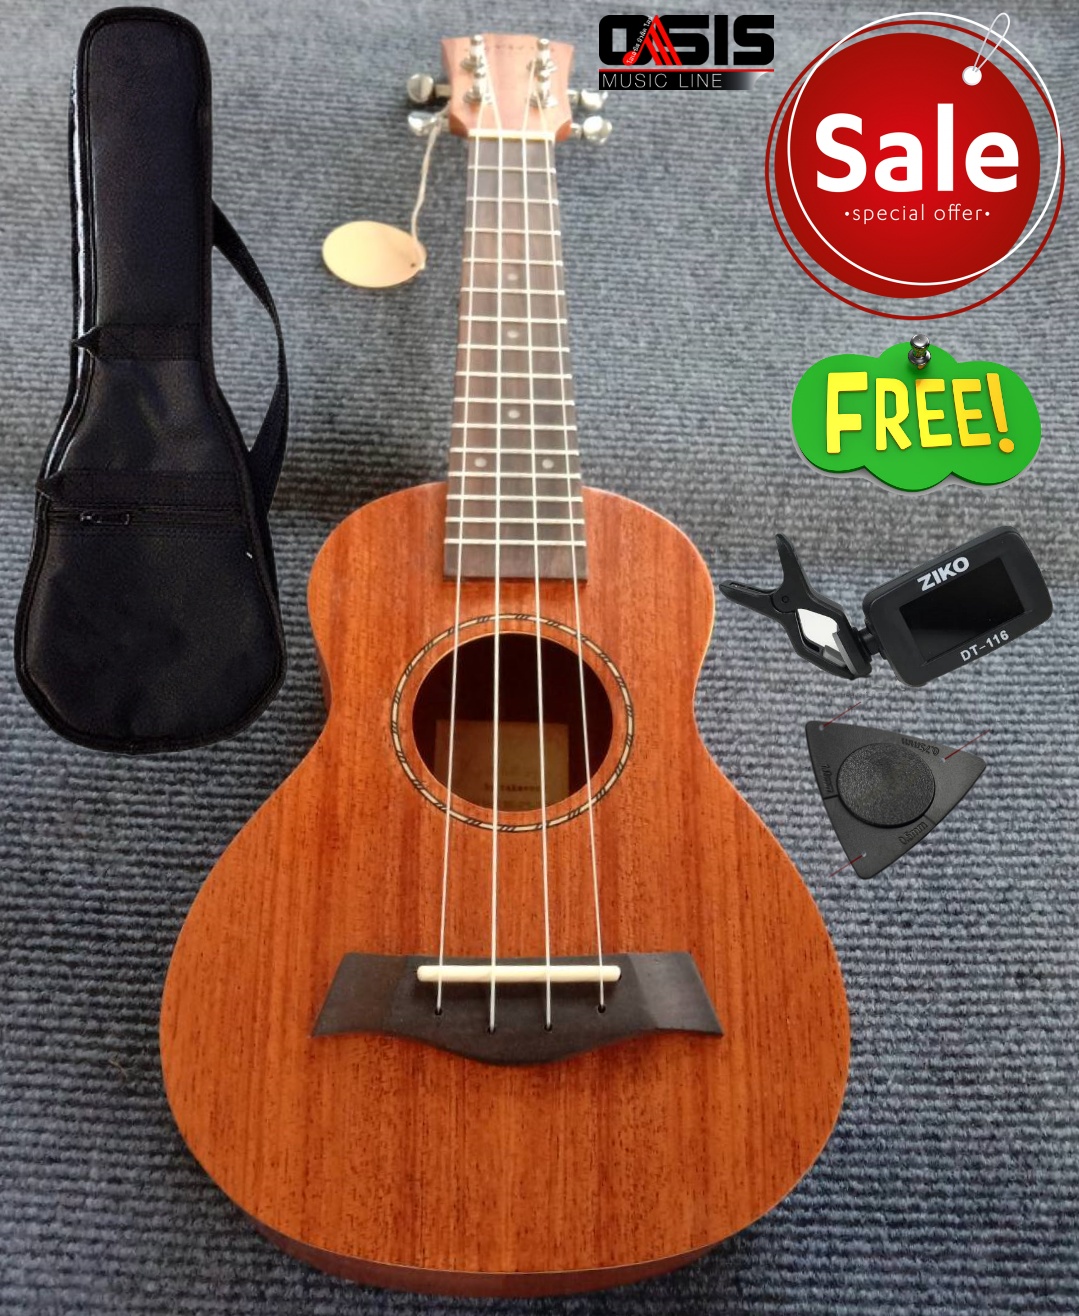 (ส่งทุกวัน) ukulele ไม้มะฮอกกานี UK-21 ((ฟรีกระเป๋า+เครื่องตั้งสาย+Pick)) อูคูเลเล่ UKULELE 21นิ้ว